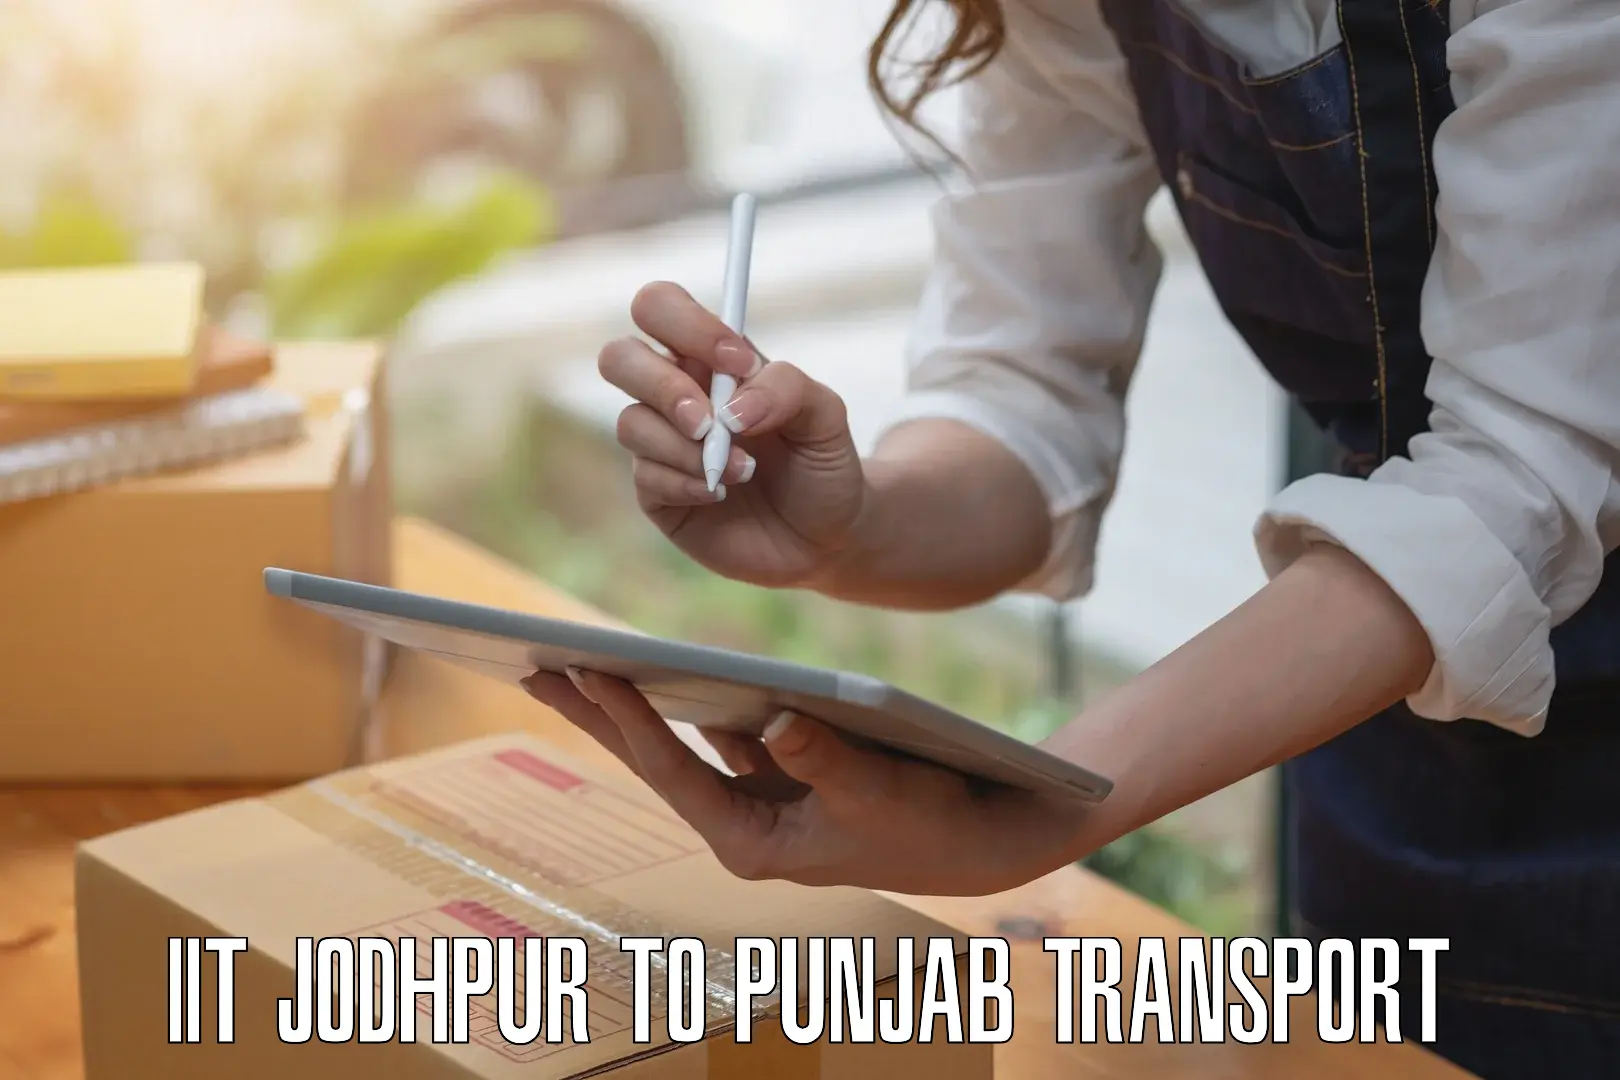 Road transport online services IIT Jodhpur to Gurdaspur